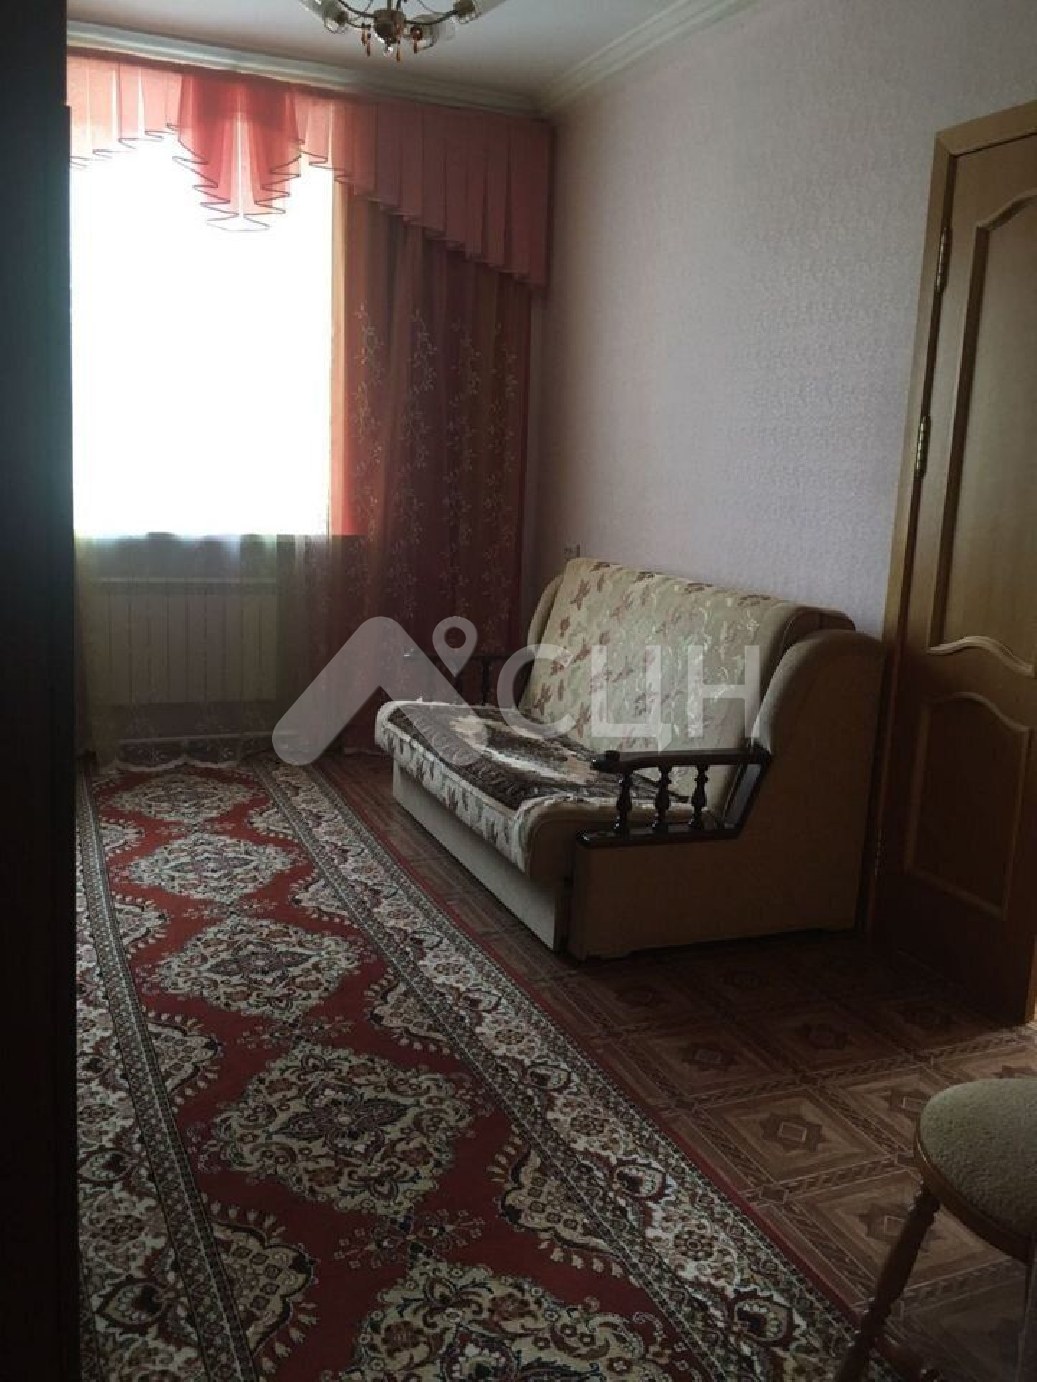 Жилье вторичка саров
: Г. Саров, проспект Ленина, 8, 3-комн квартира, этаж 1 из 4, продажа.